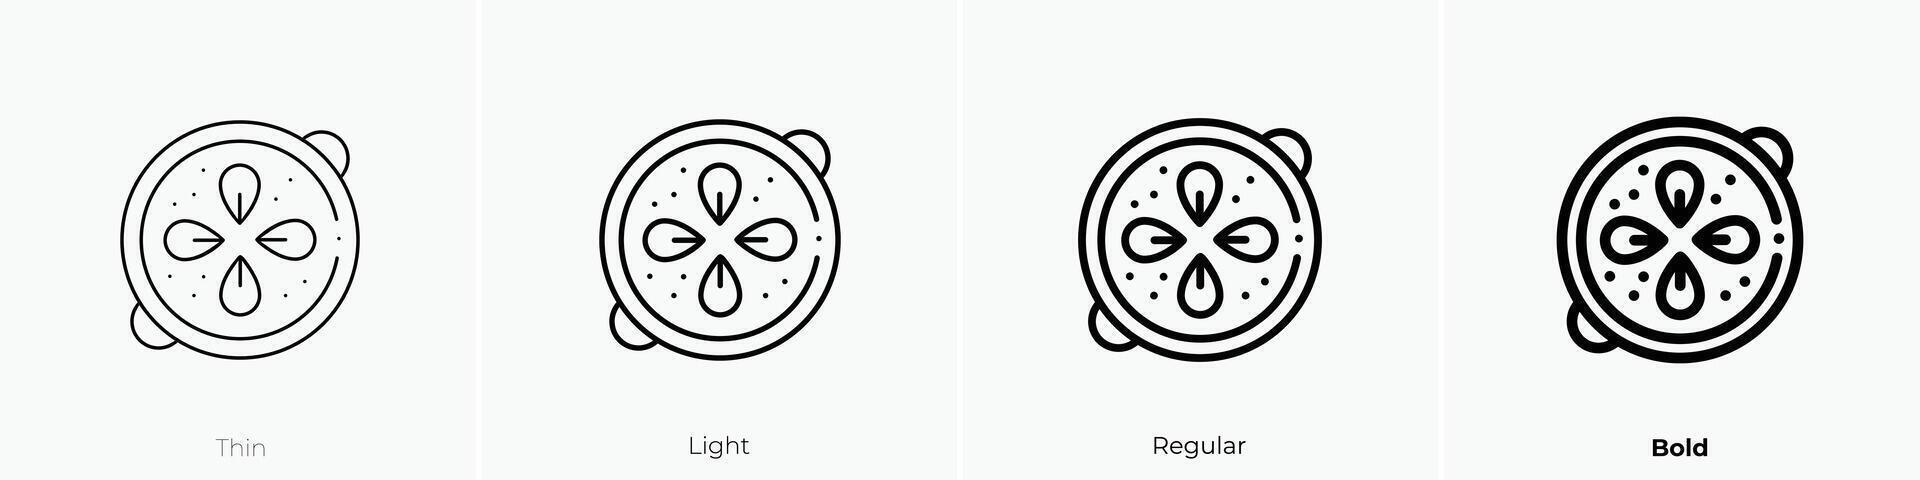 paella ikon. tunn, ljus, regelbunden och djärv stil design isolerat på vit bakgrund vektor